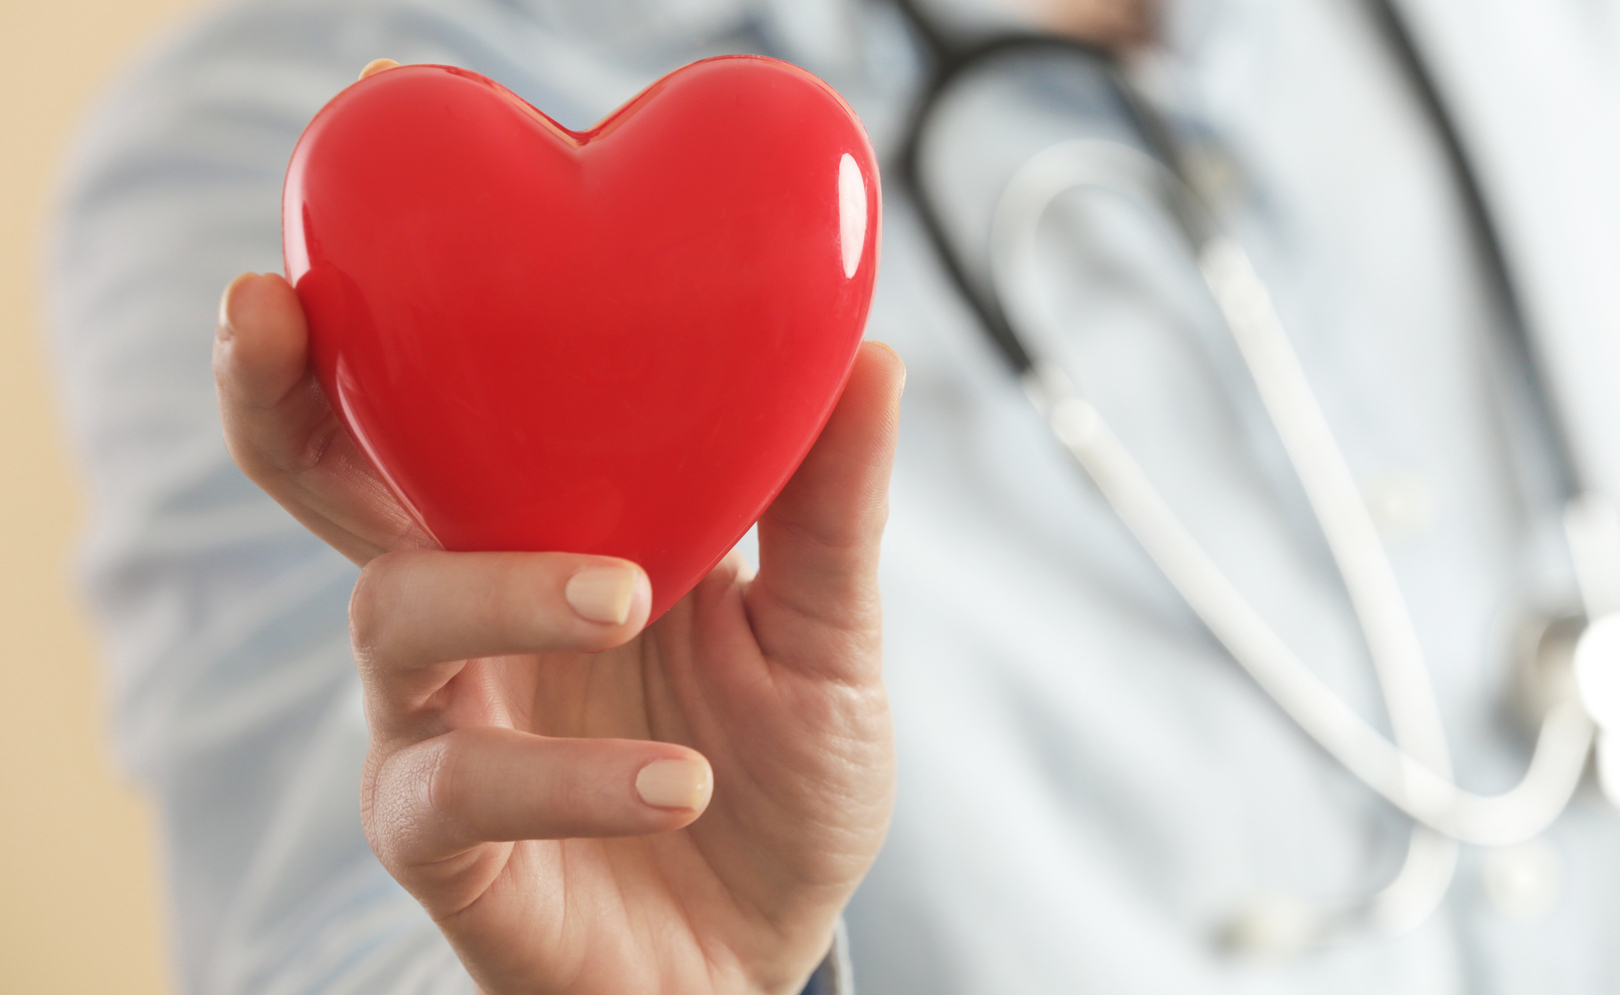 Schlaganfallprävention: Erstmals in Österreich chirurgischer Herzohrverschluss durchgeführt